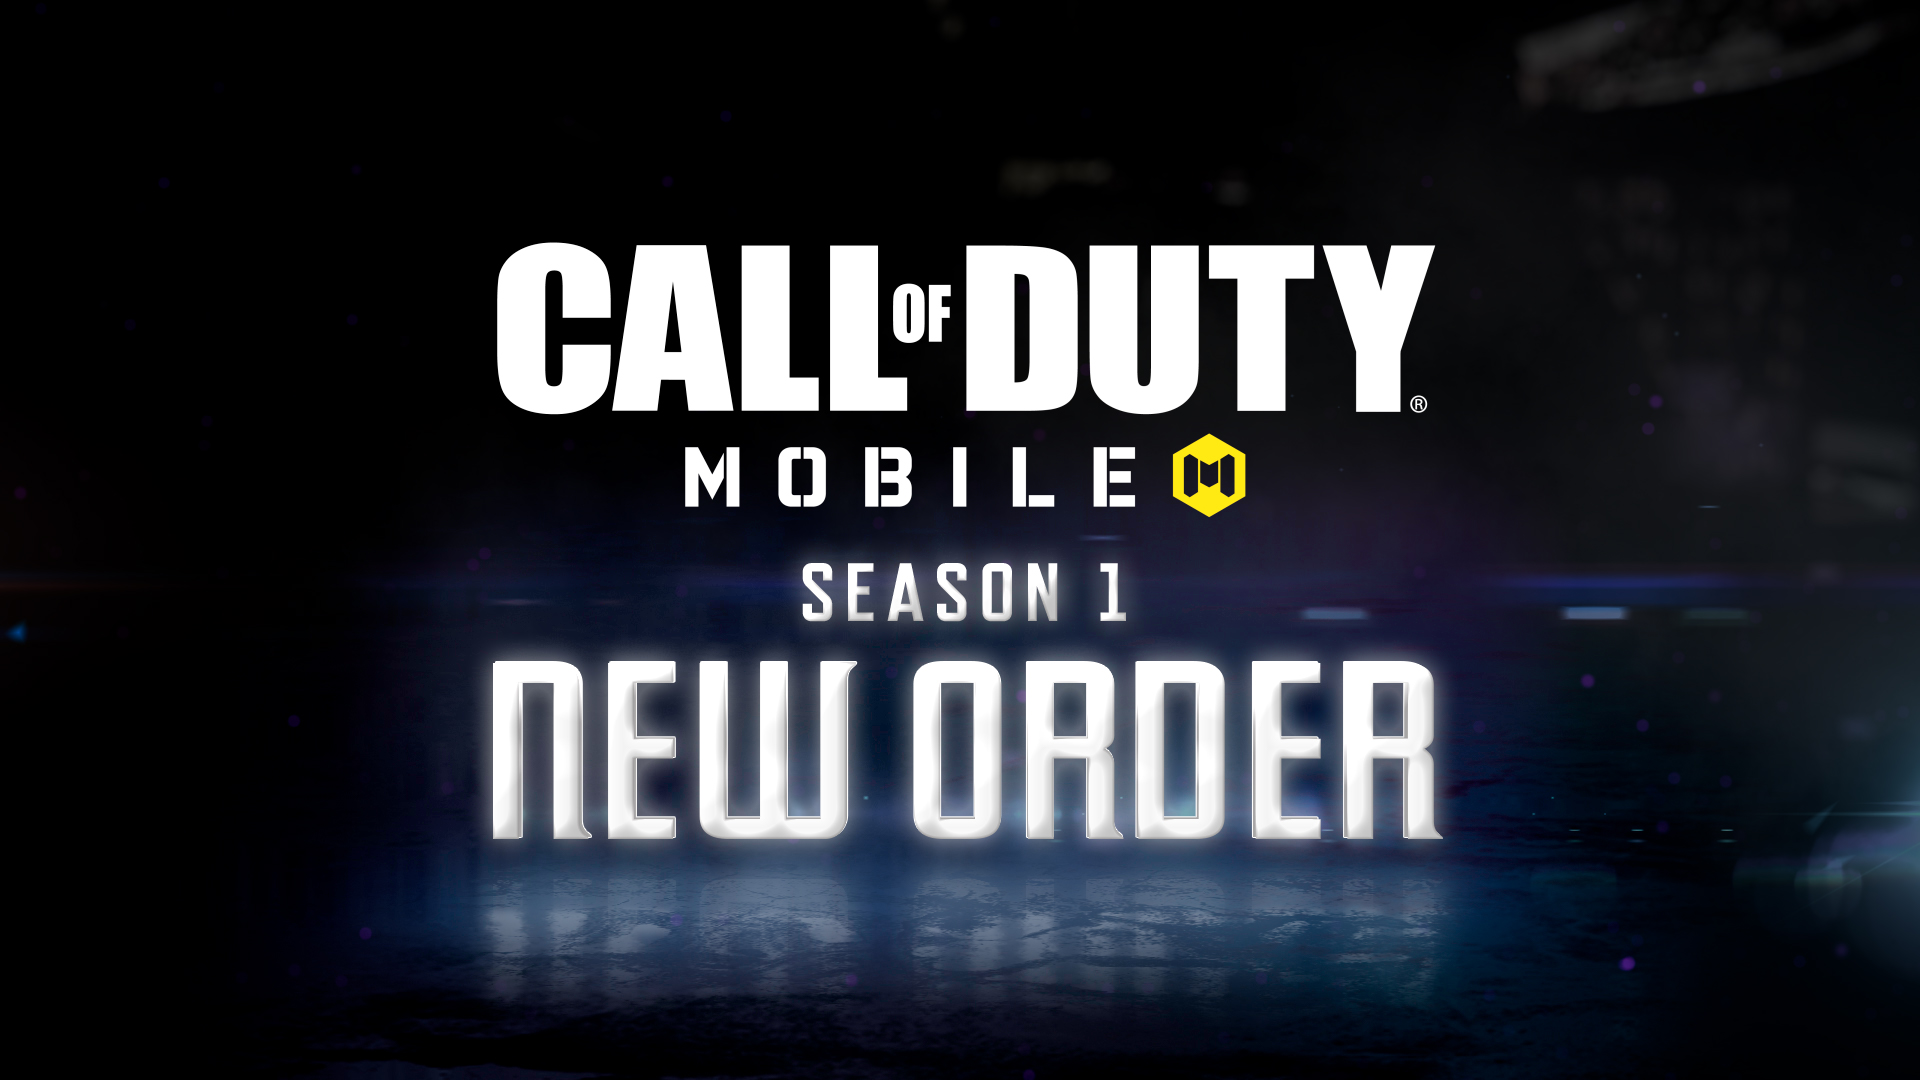 El futuro ya está aquí. Call of Duty: Mobile Season 1: New Order ya comenzó. La Temporada 1 inicia en 2021 con un nuevo lote de contenido de temática cibernética